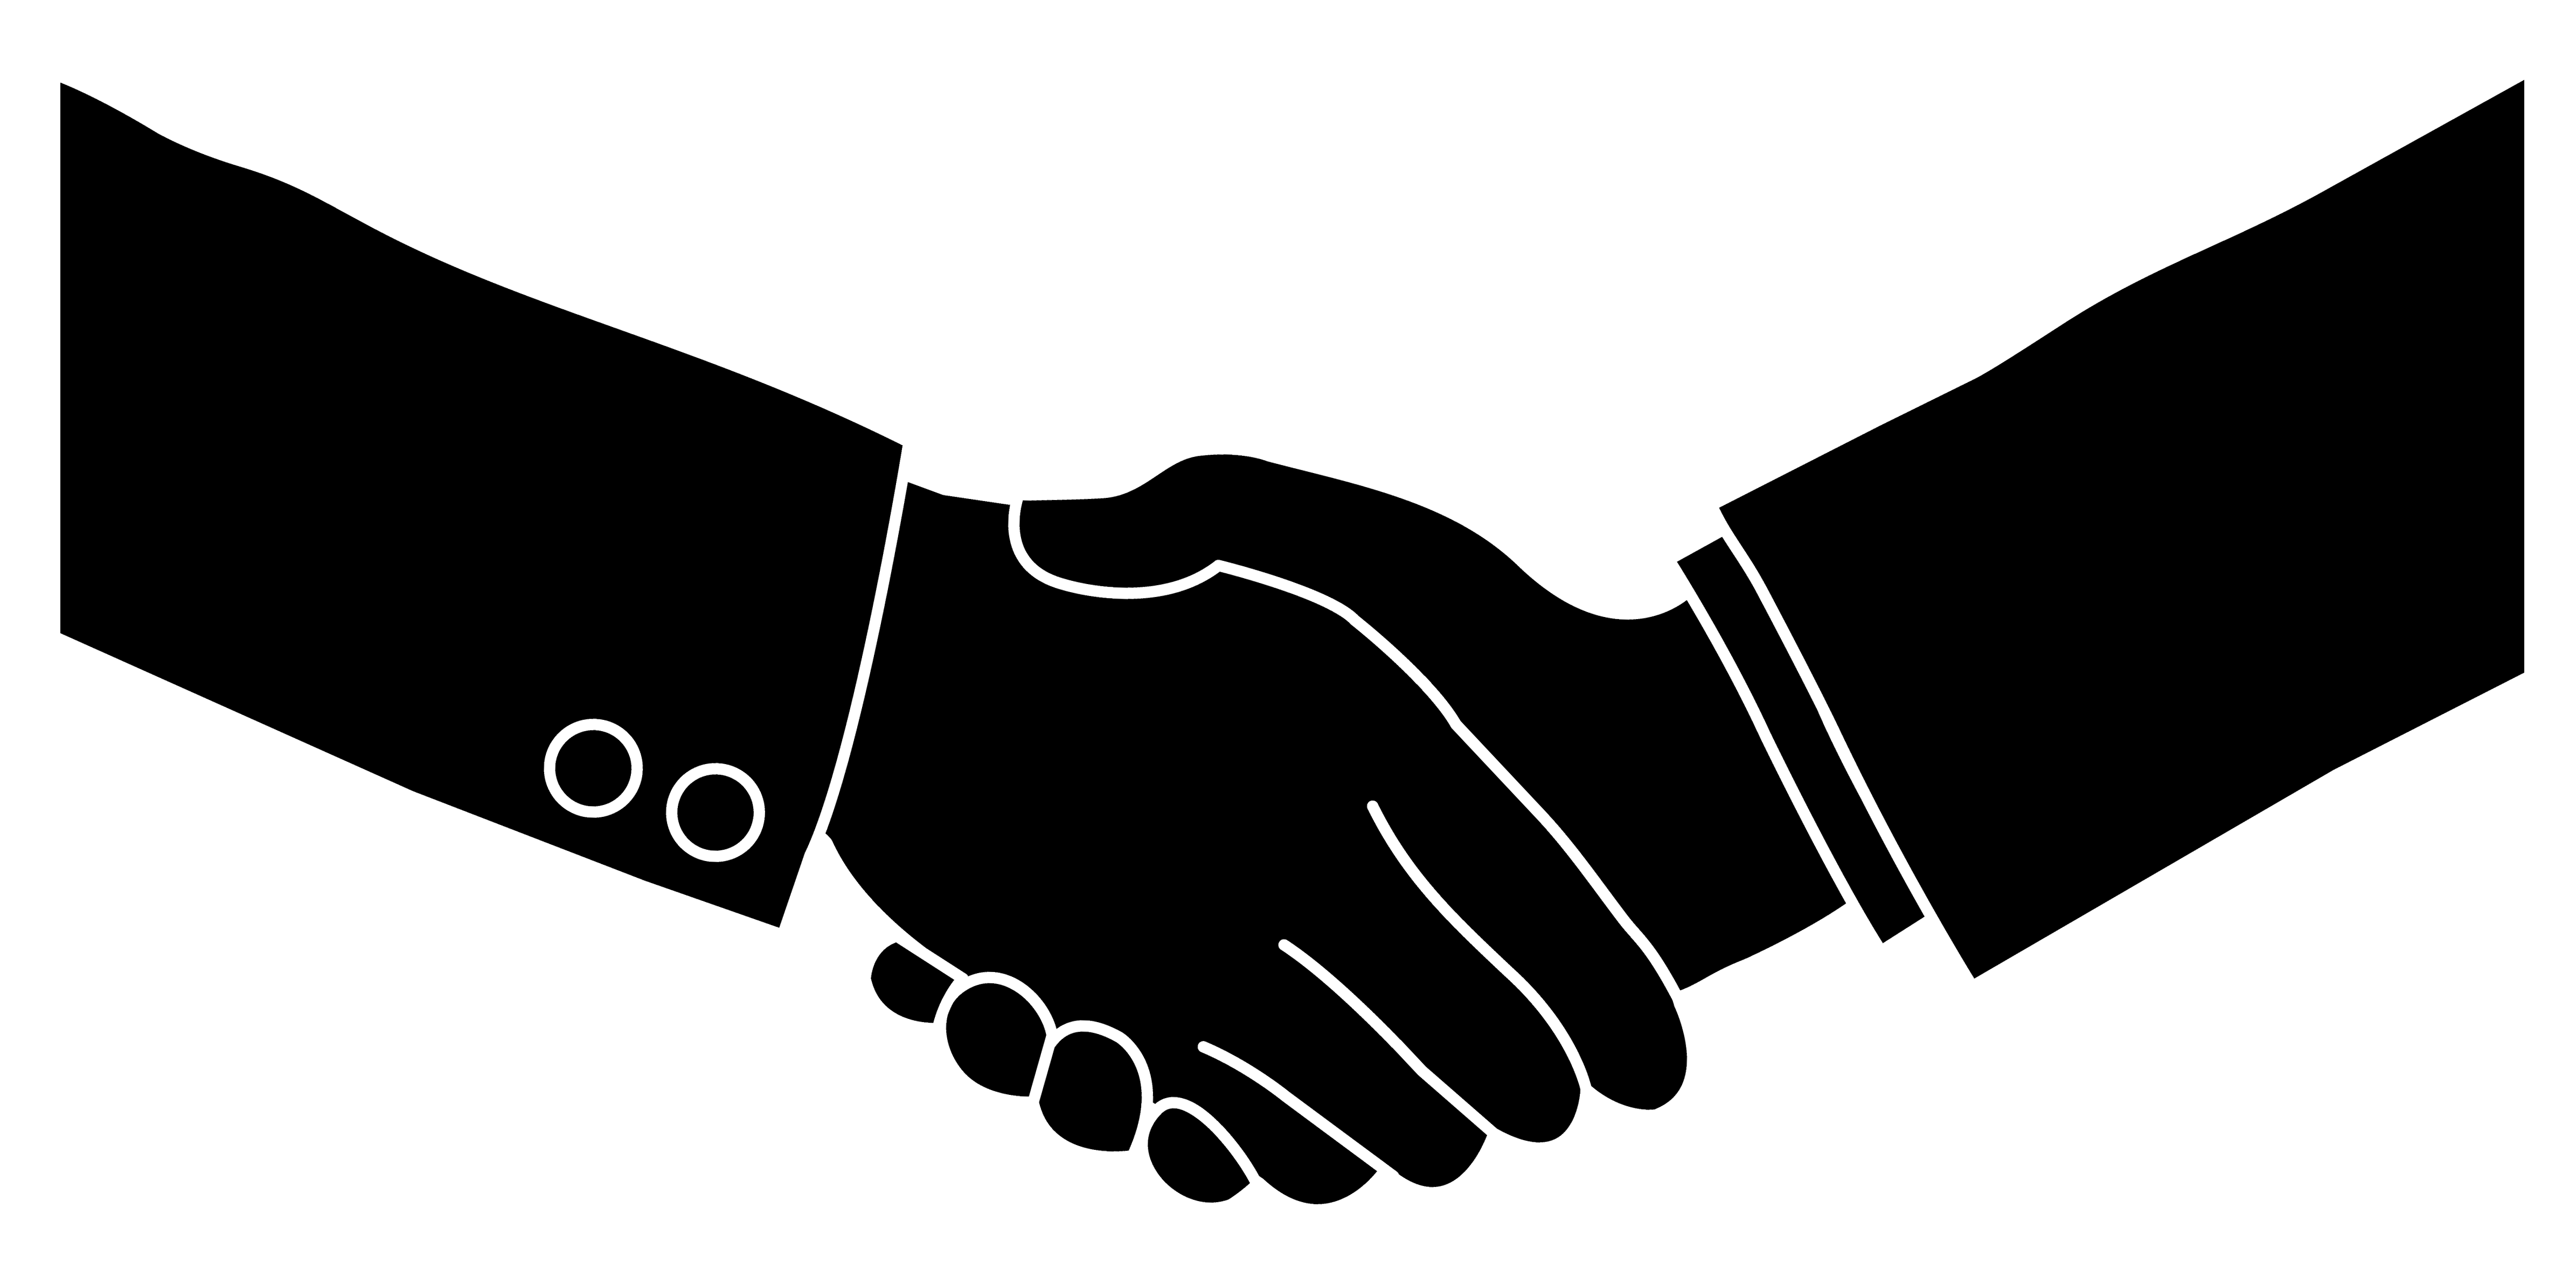 Handshake shaking hands hand 